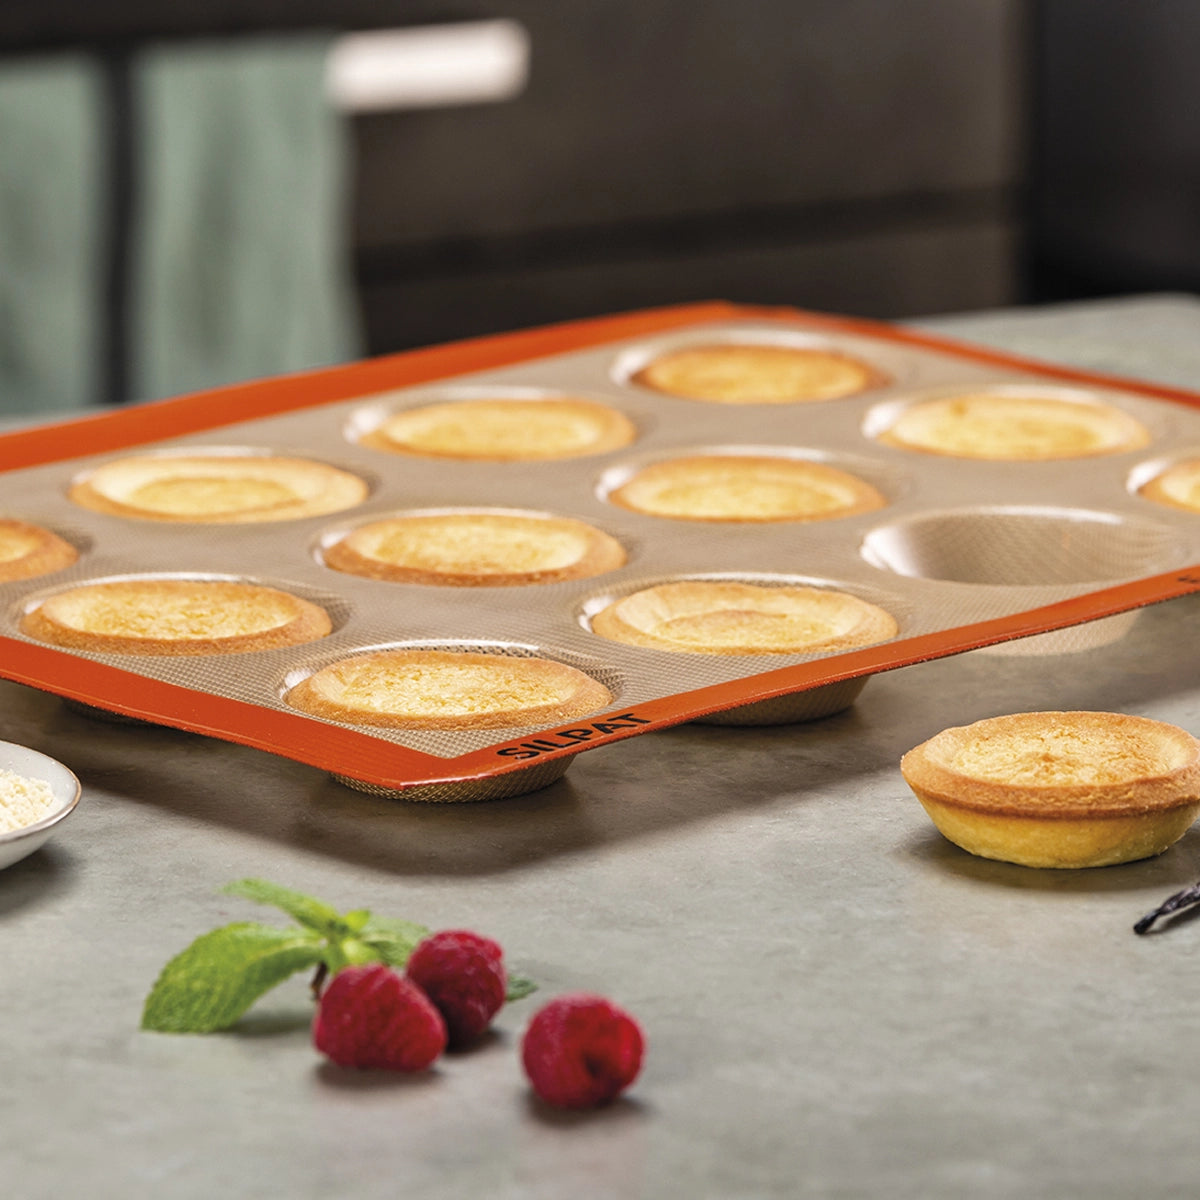 Moule pour réaliser des tartes et tartelettes circulaires, 2 formats  disponibles pour réaliser une tarte ou de mini tartelettes